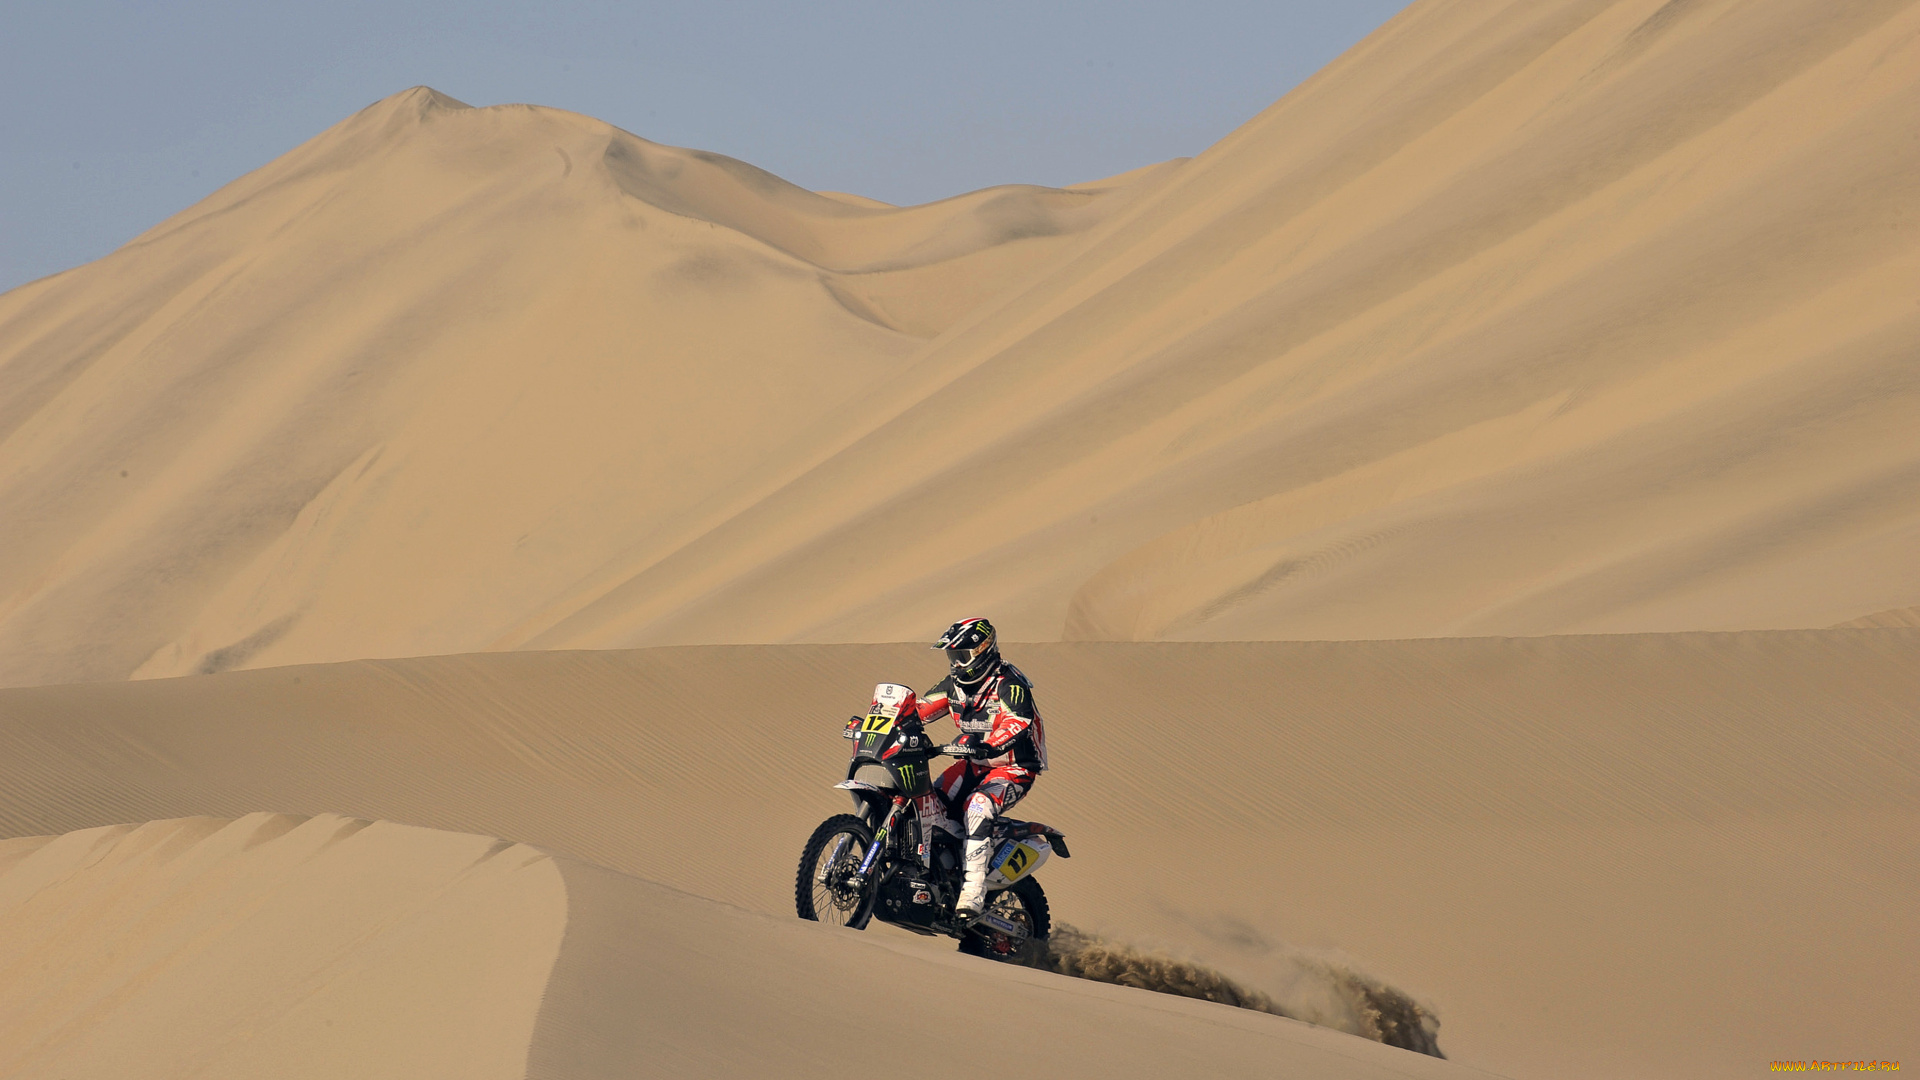 спорт, мотокросс, жара, небо, пустыня, мото, дюна, песок, мотоцикл, dakar